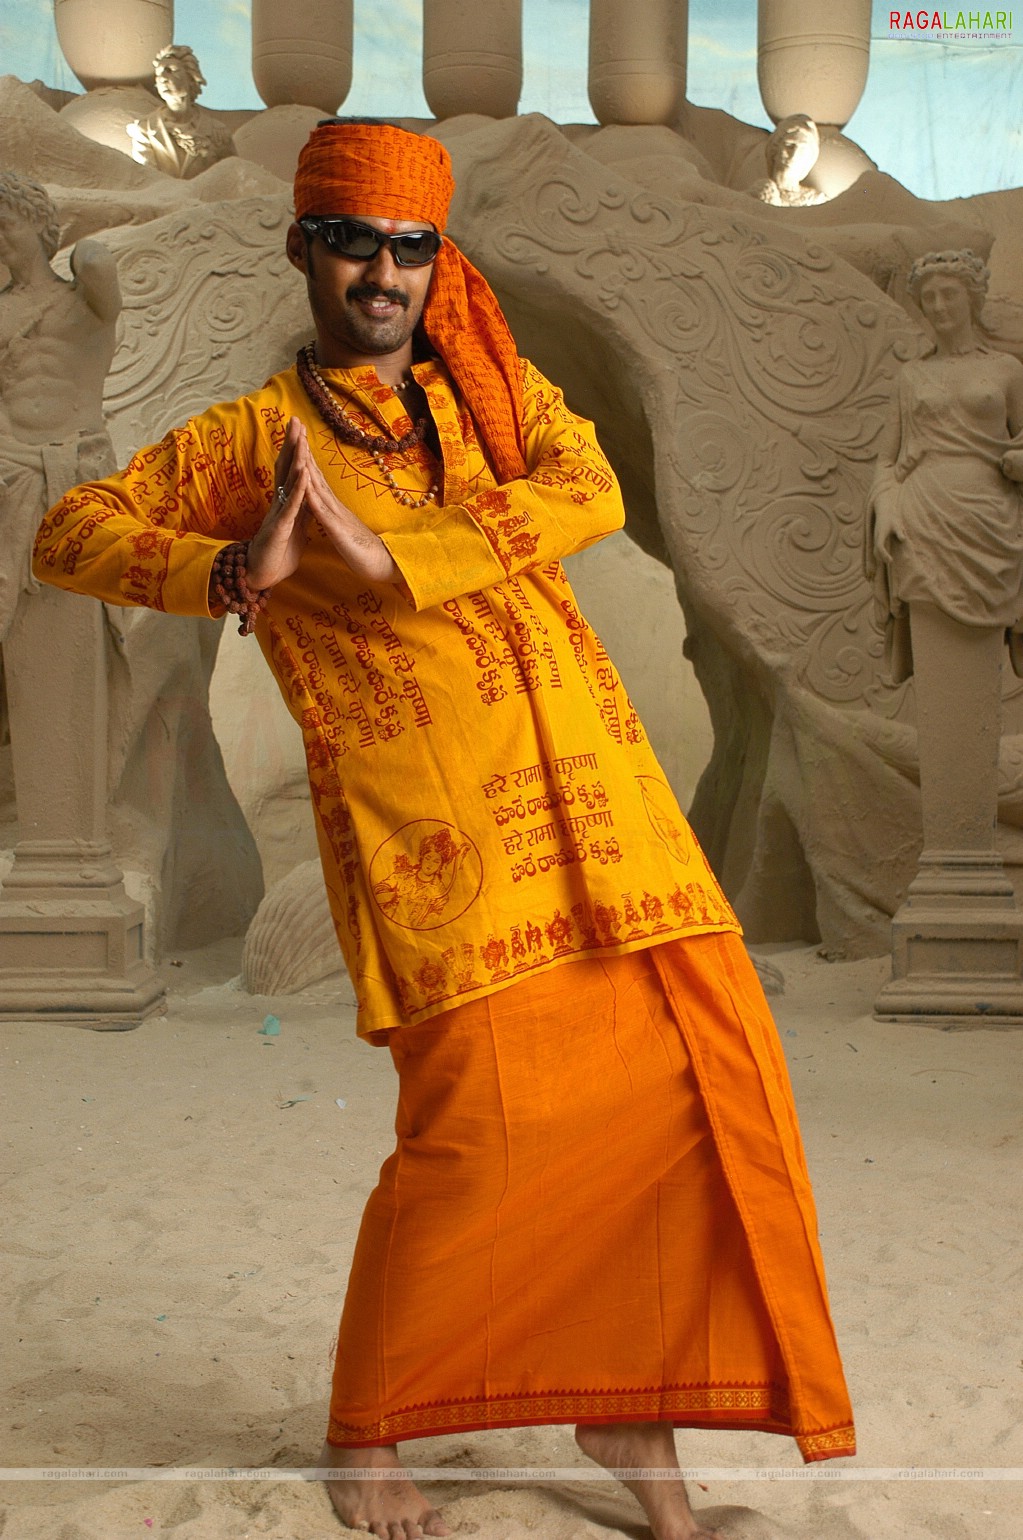 Kalyan Ram